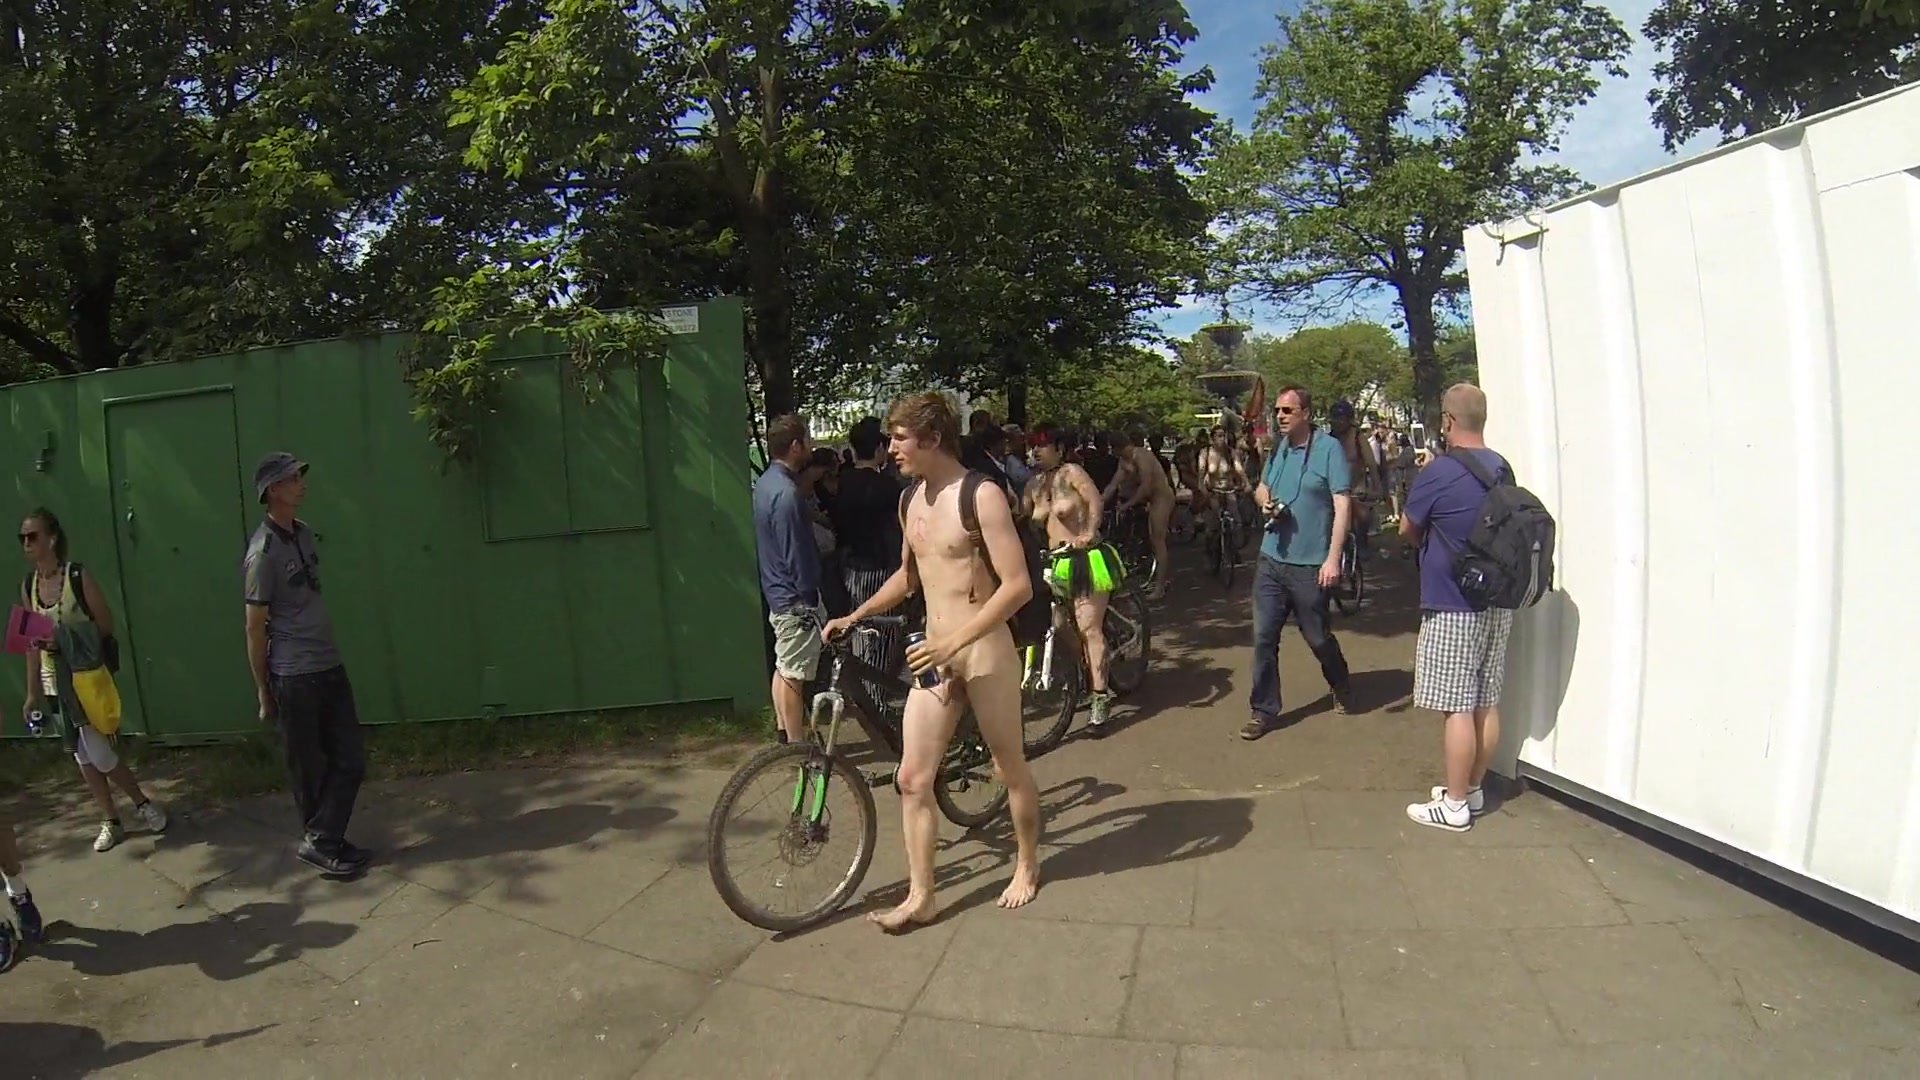 Naked man walking with bike